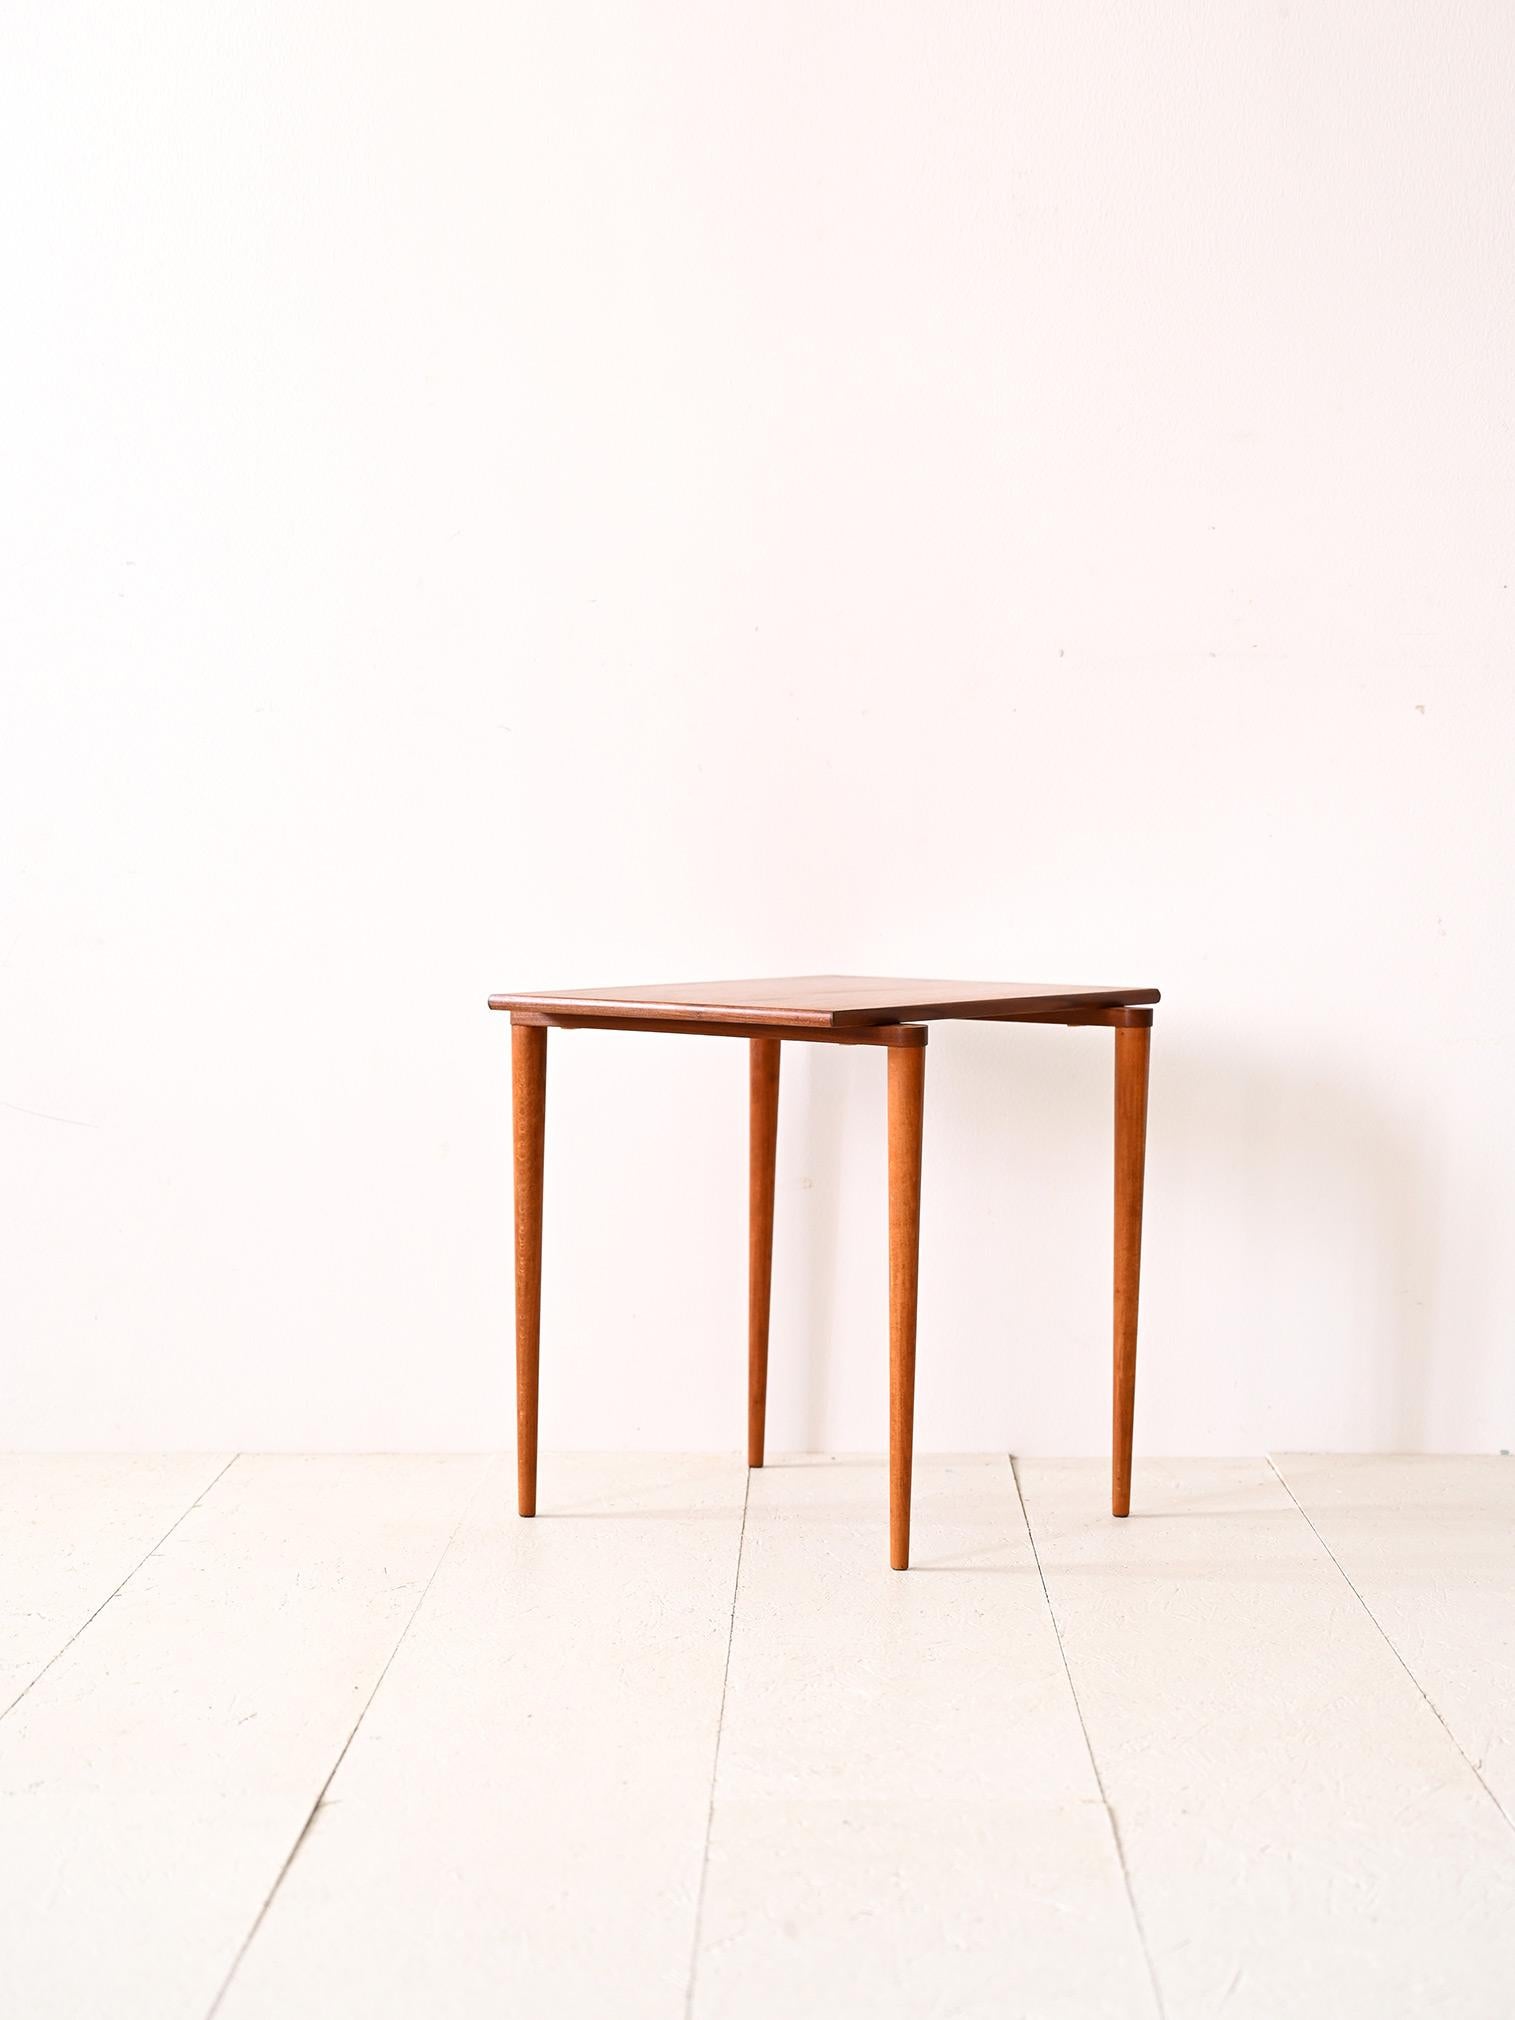 Table basse vintage des années 1960.

Un meuble antique moderne qui se distingue par la présence de longs pieds coniques et dont la base est en saillie par rapport au plateau de la table. Cette apparence originale renvoie aux formes organiques